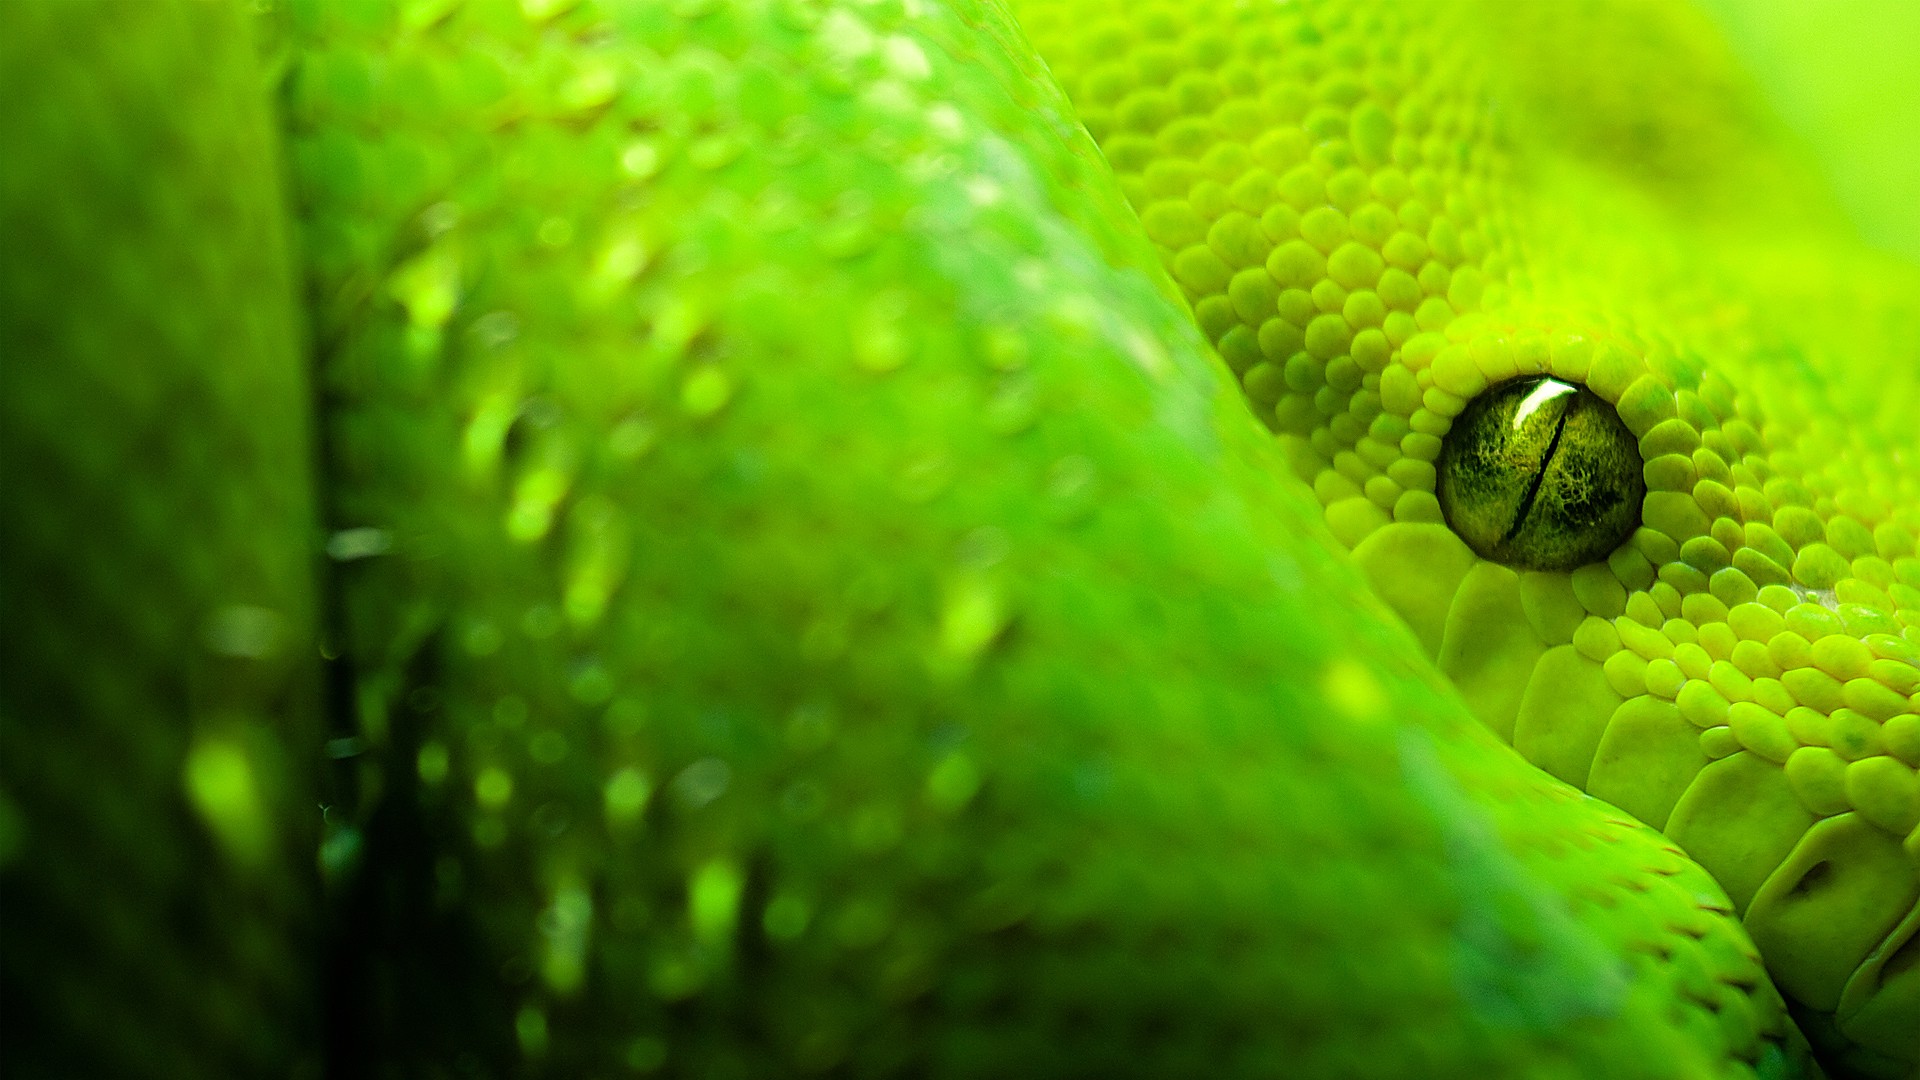 White Snake Green Eyes , HD Wallpaper & Backgrounds